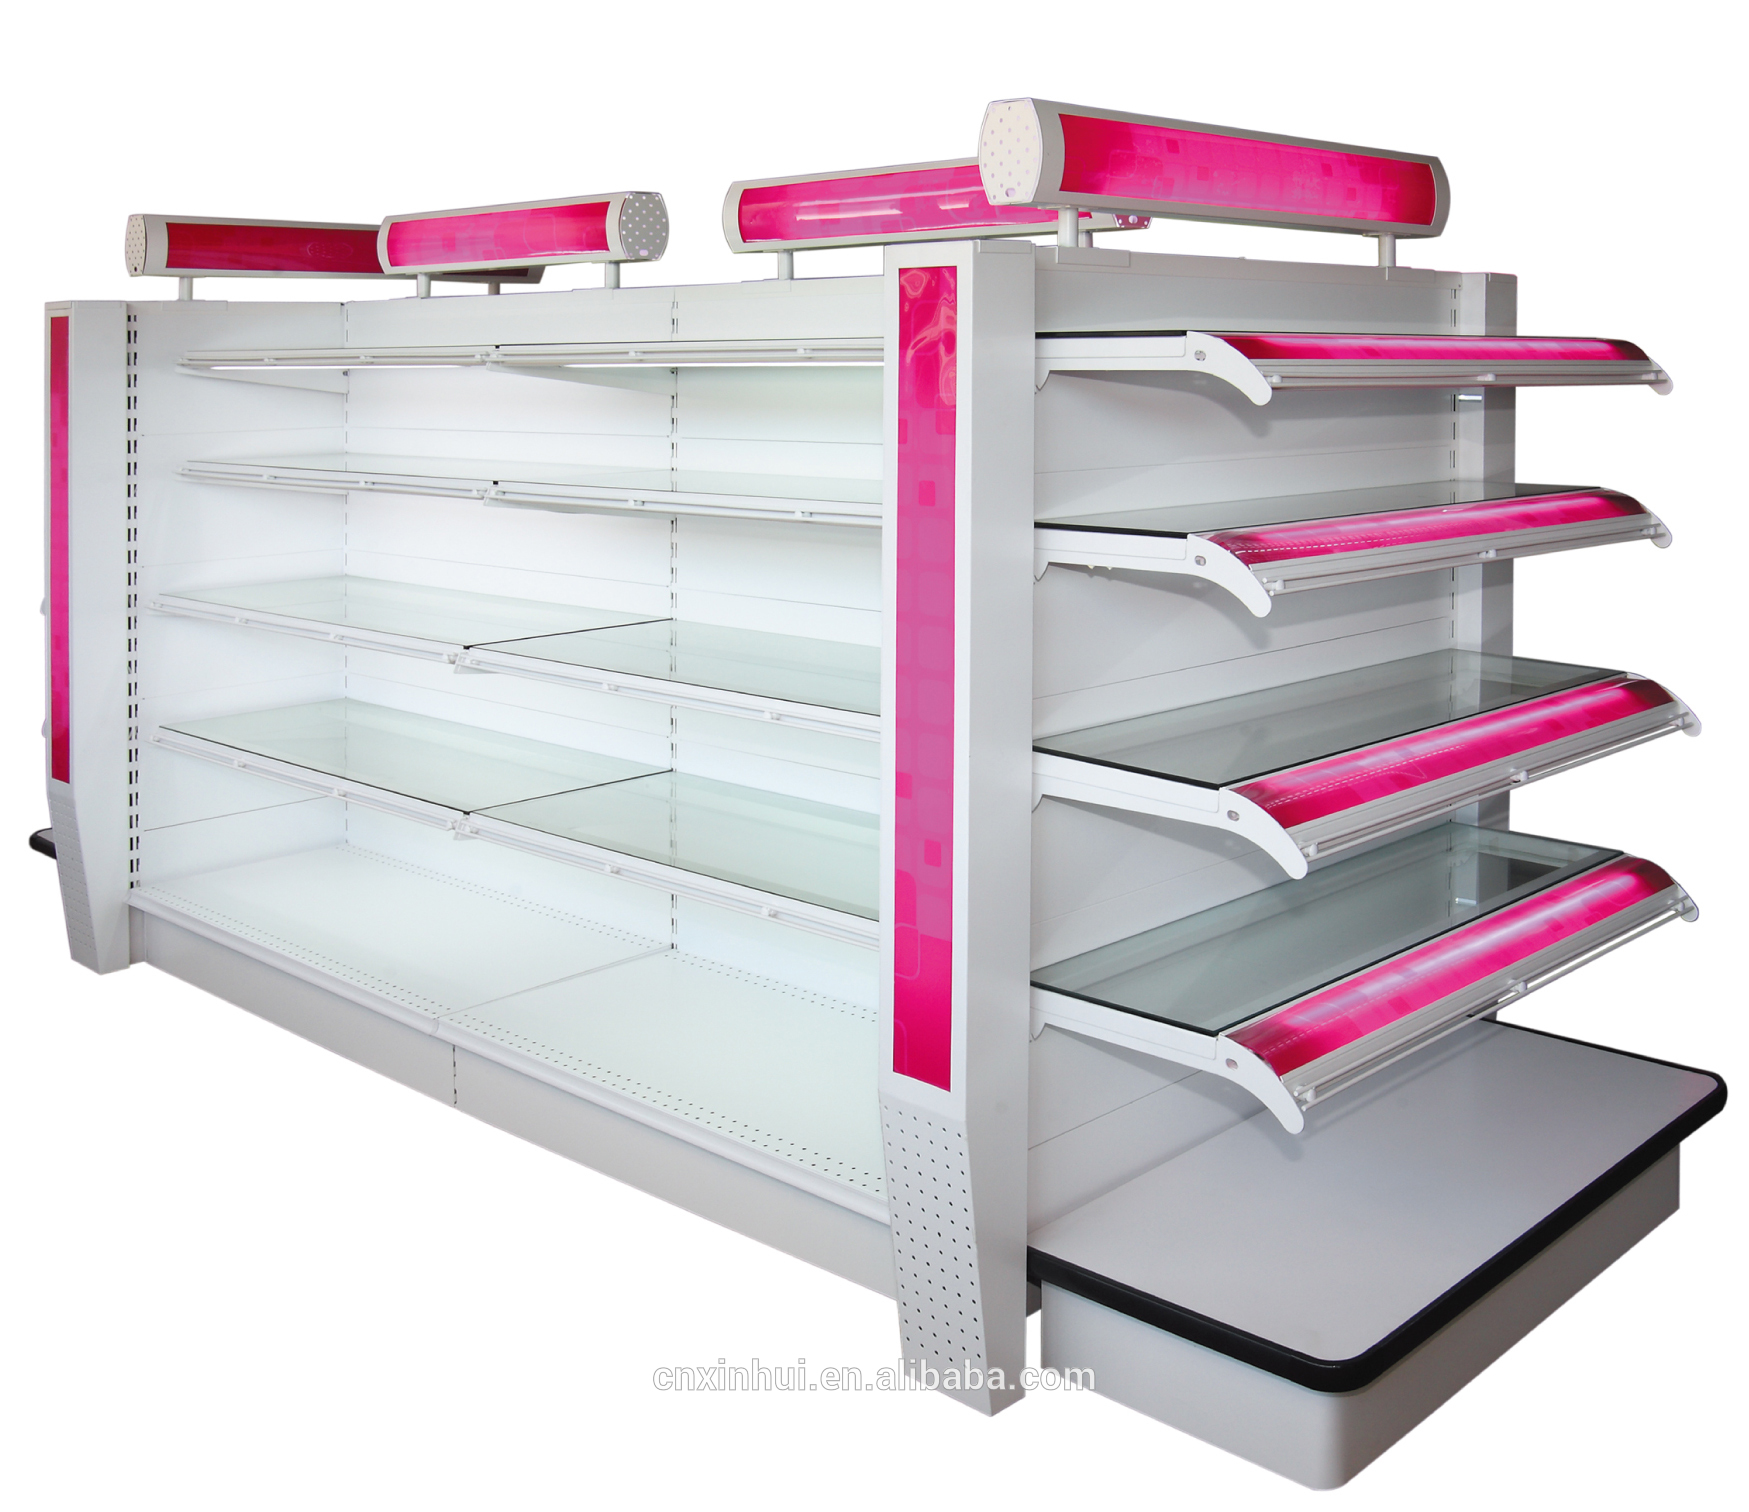 Double side & fashion supermarket gondola storage shelf